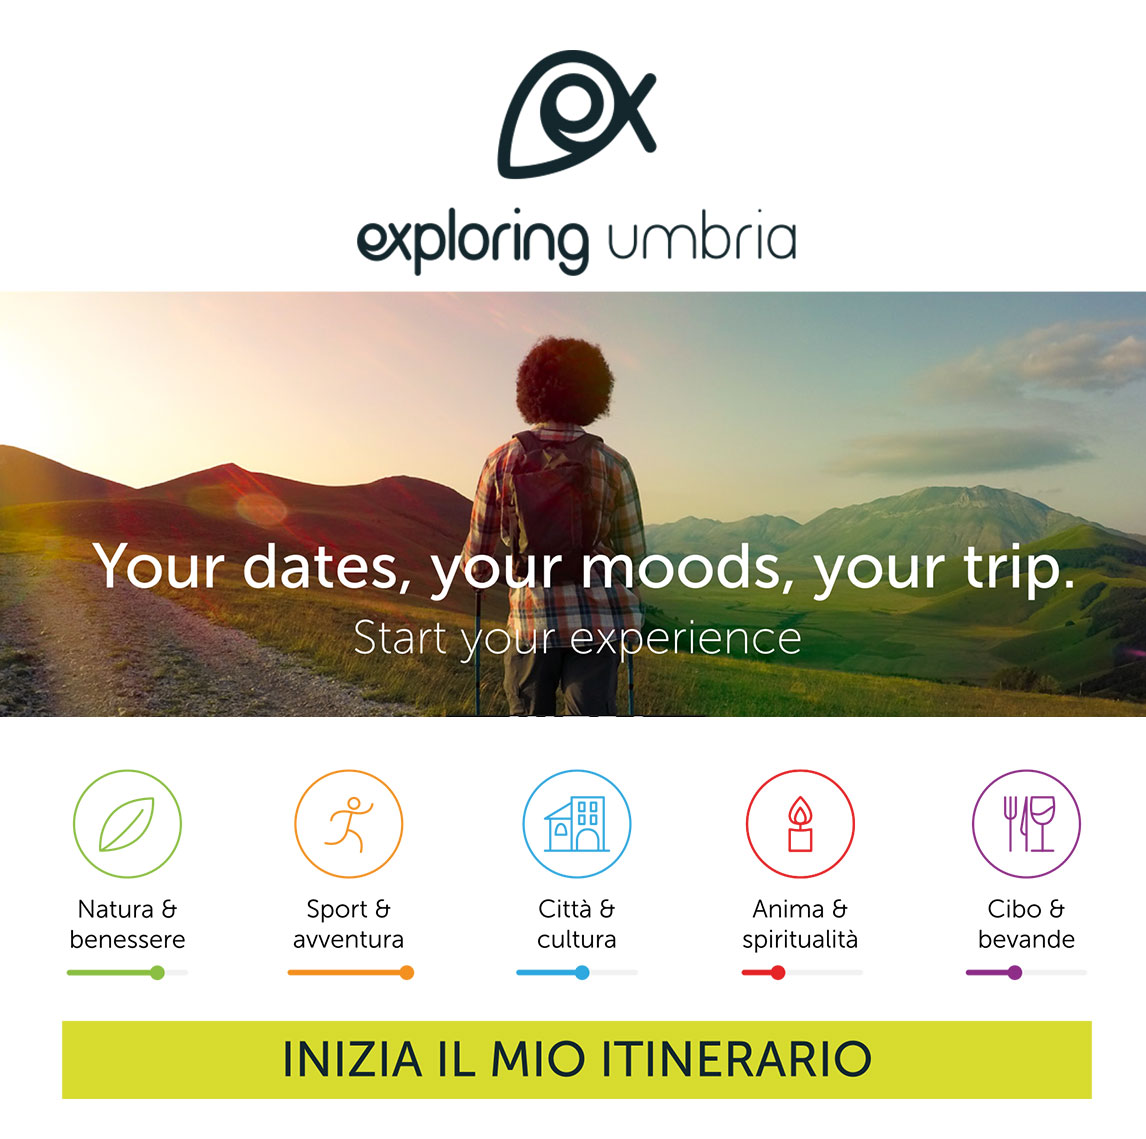 Casa vacanze Assisi Al Quattro partner di Exploring Umbria torur operator di incoming territorio umbro